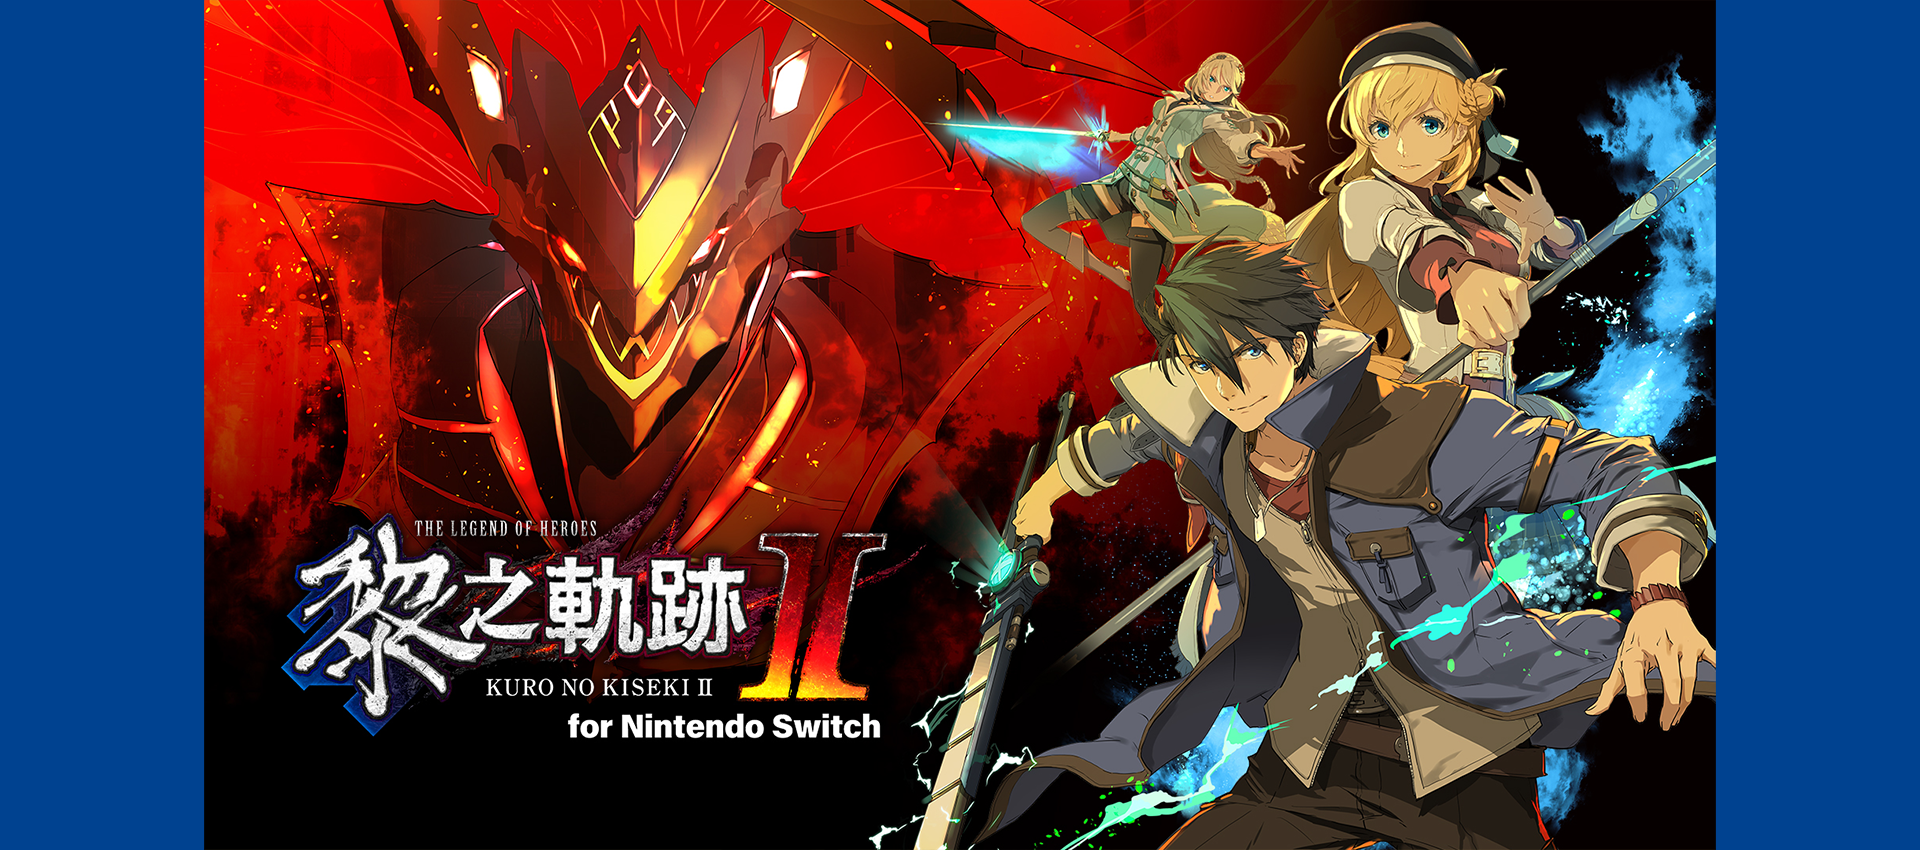 The Legend of Heroes: Kuro no Kiseki II for Nintendo Switch